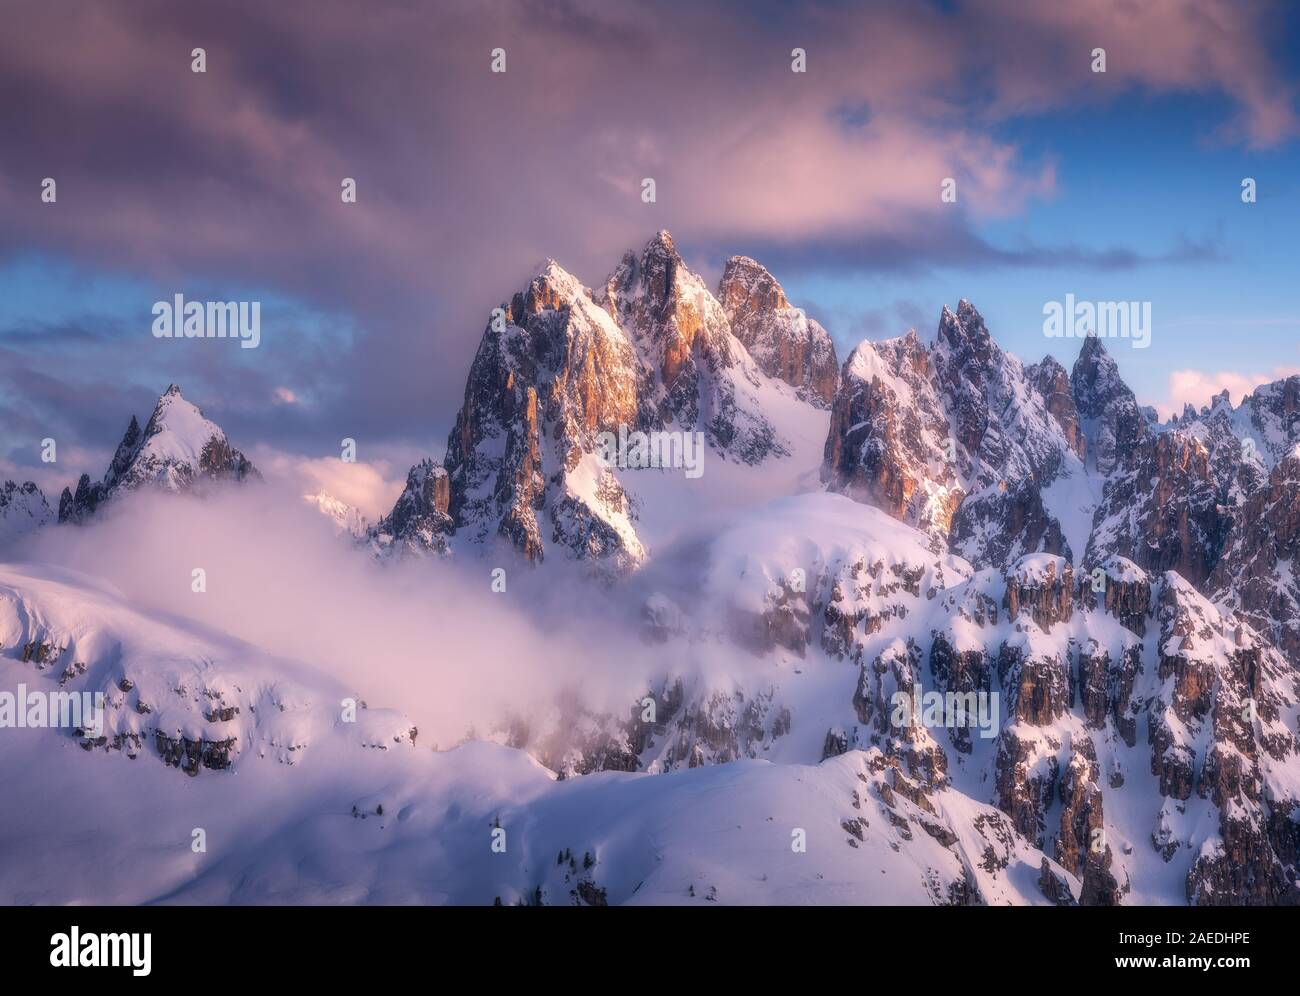 Snowy Mountain peaks dans le brouillard et ciel bleu avec des nuages au coucher du soleil Banque D'Images